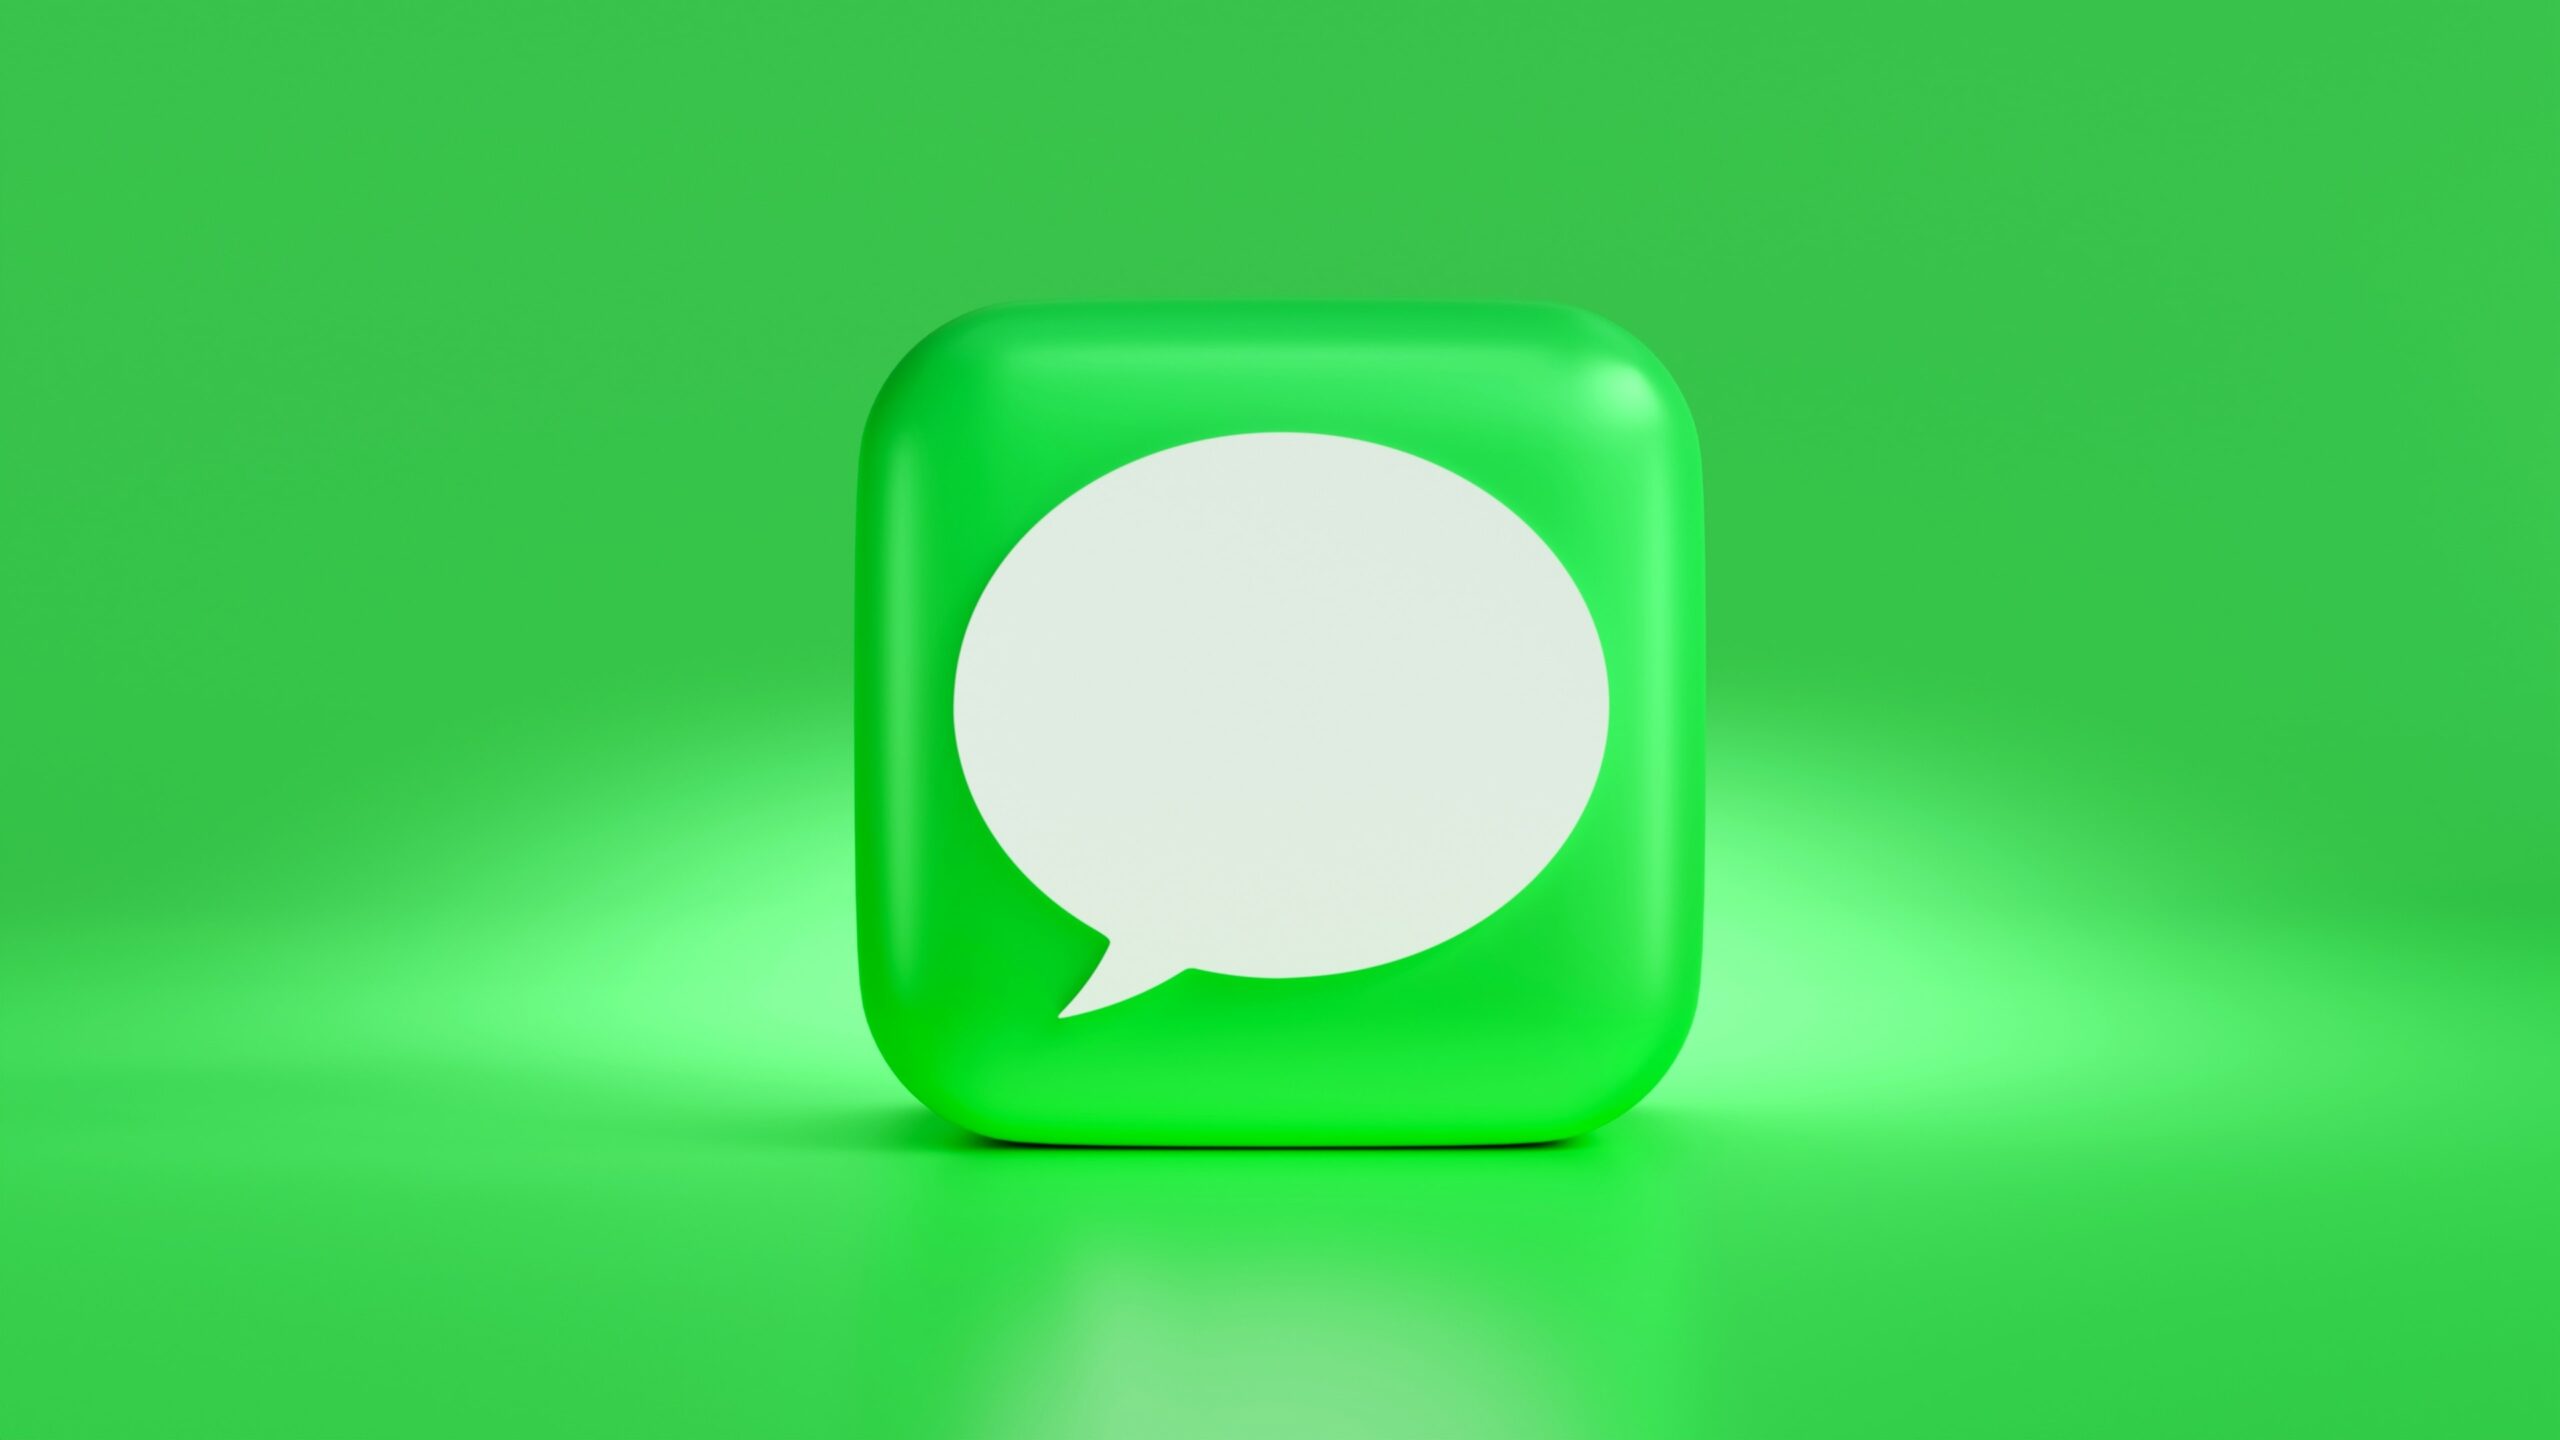 Kann man auf dem iPhone geplante Textnachrichten versenden?